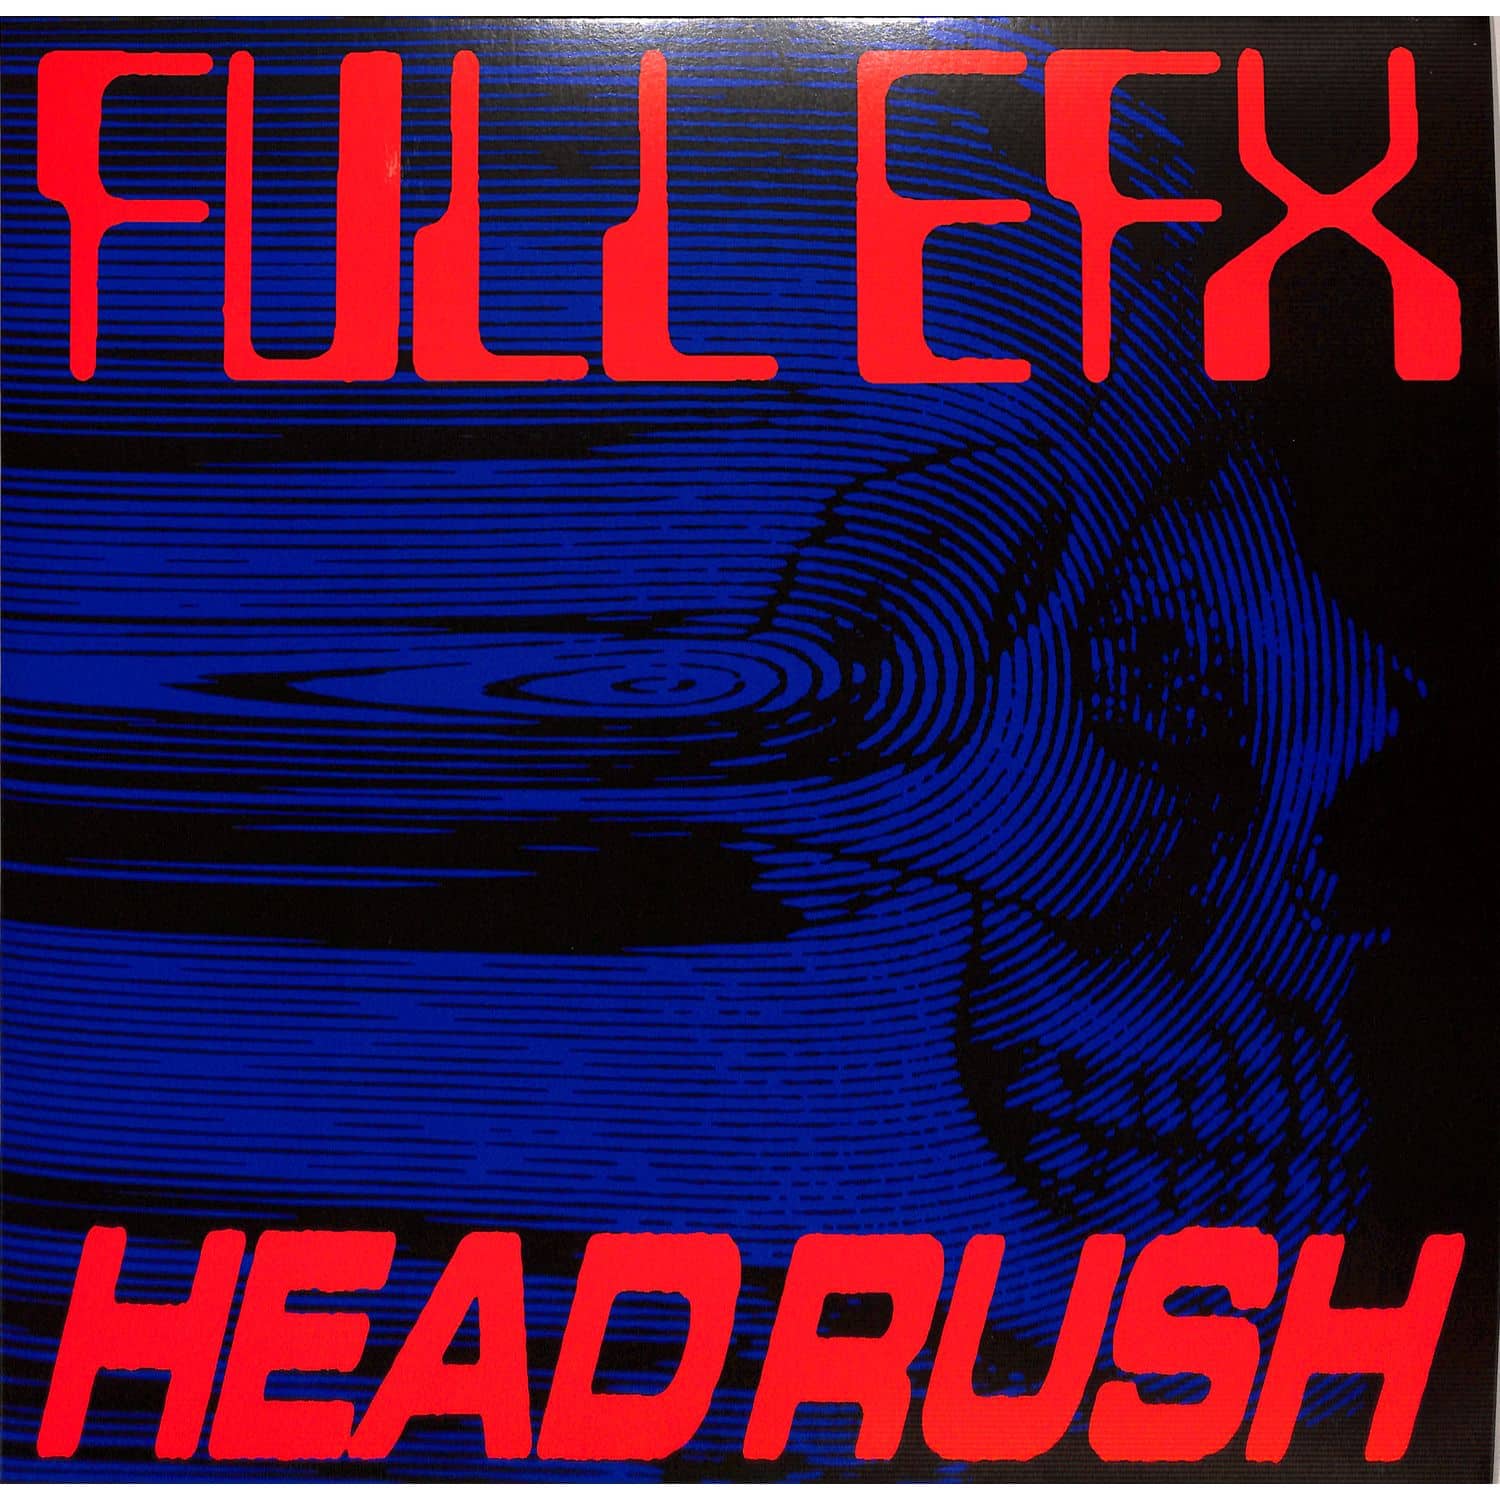 Full EFX - HEADRUSH 